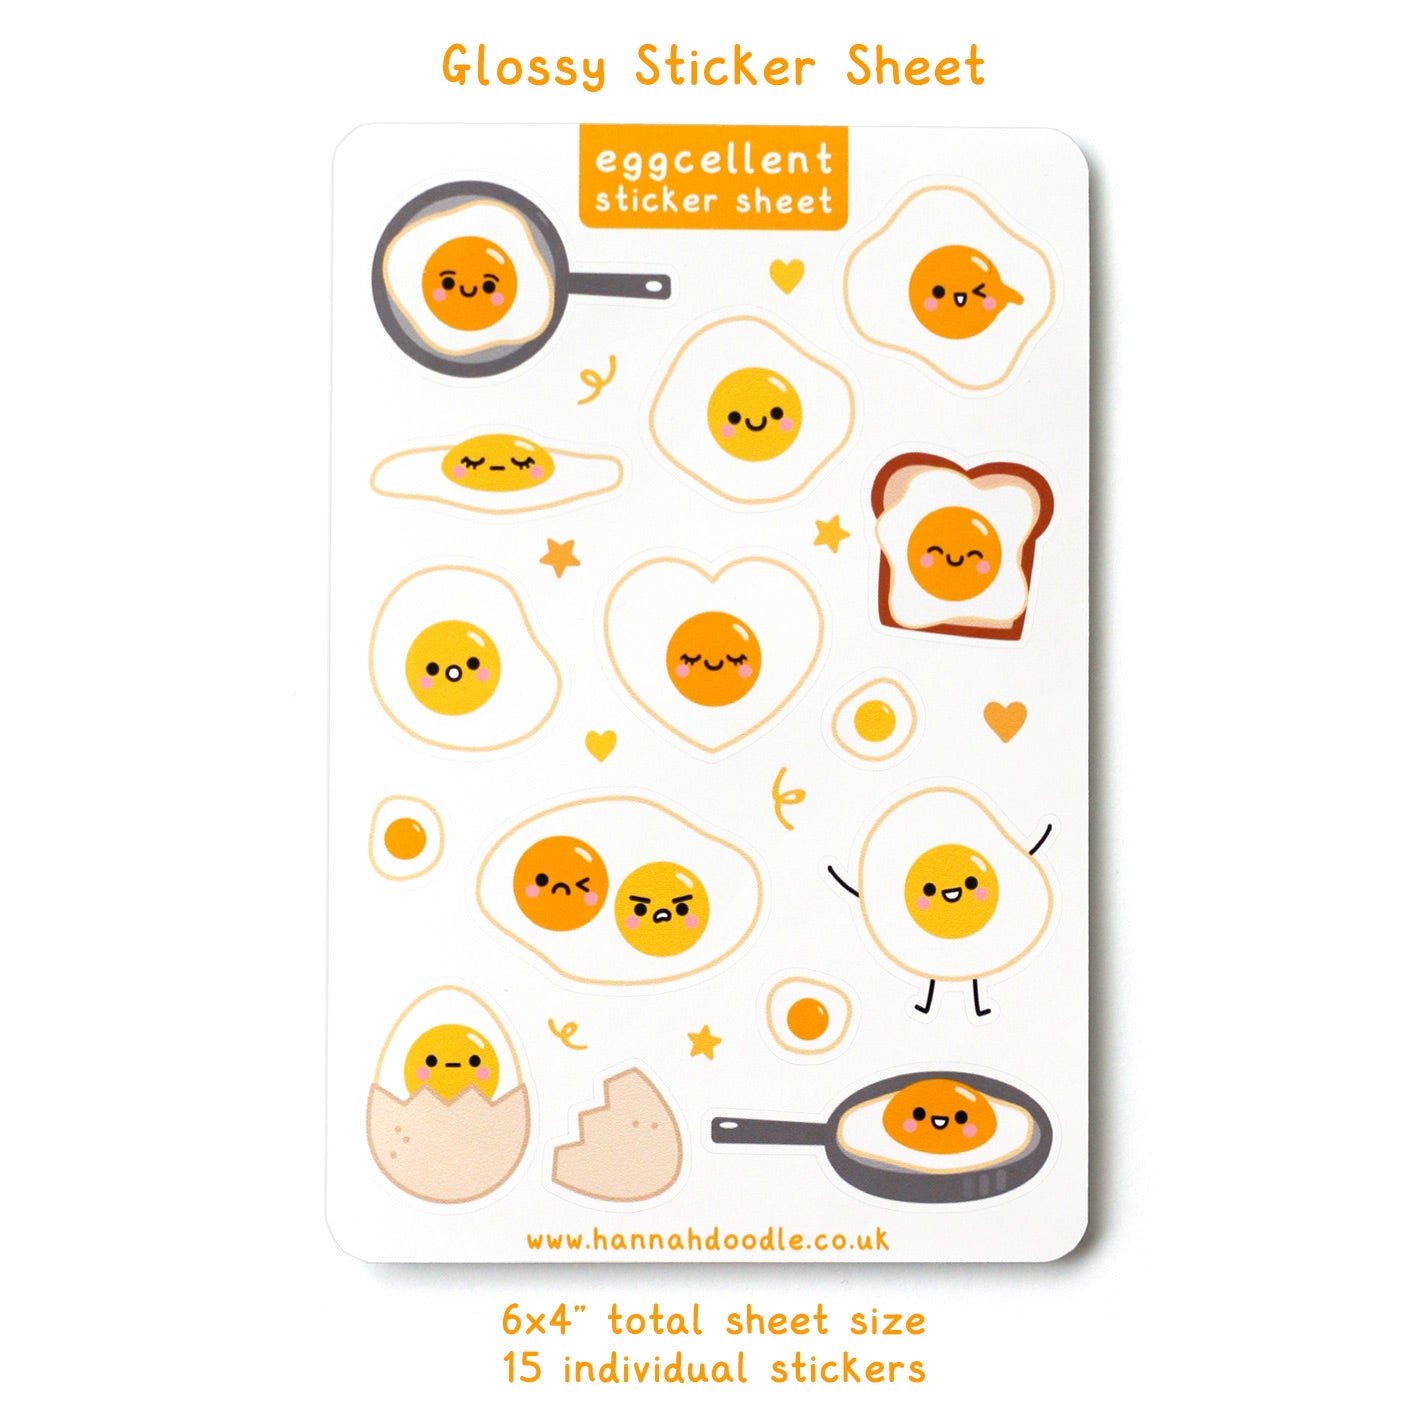 Egg Sticker Sheet Details